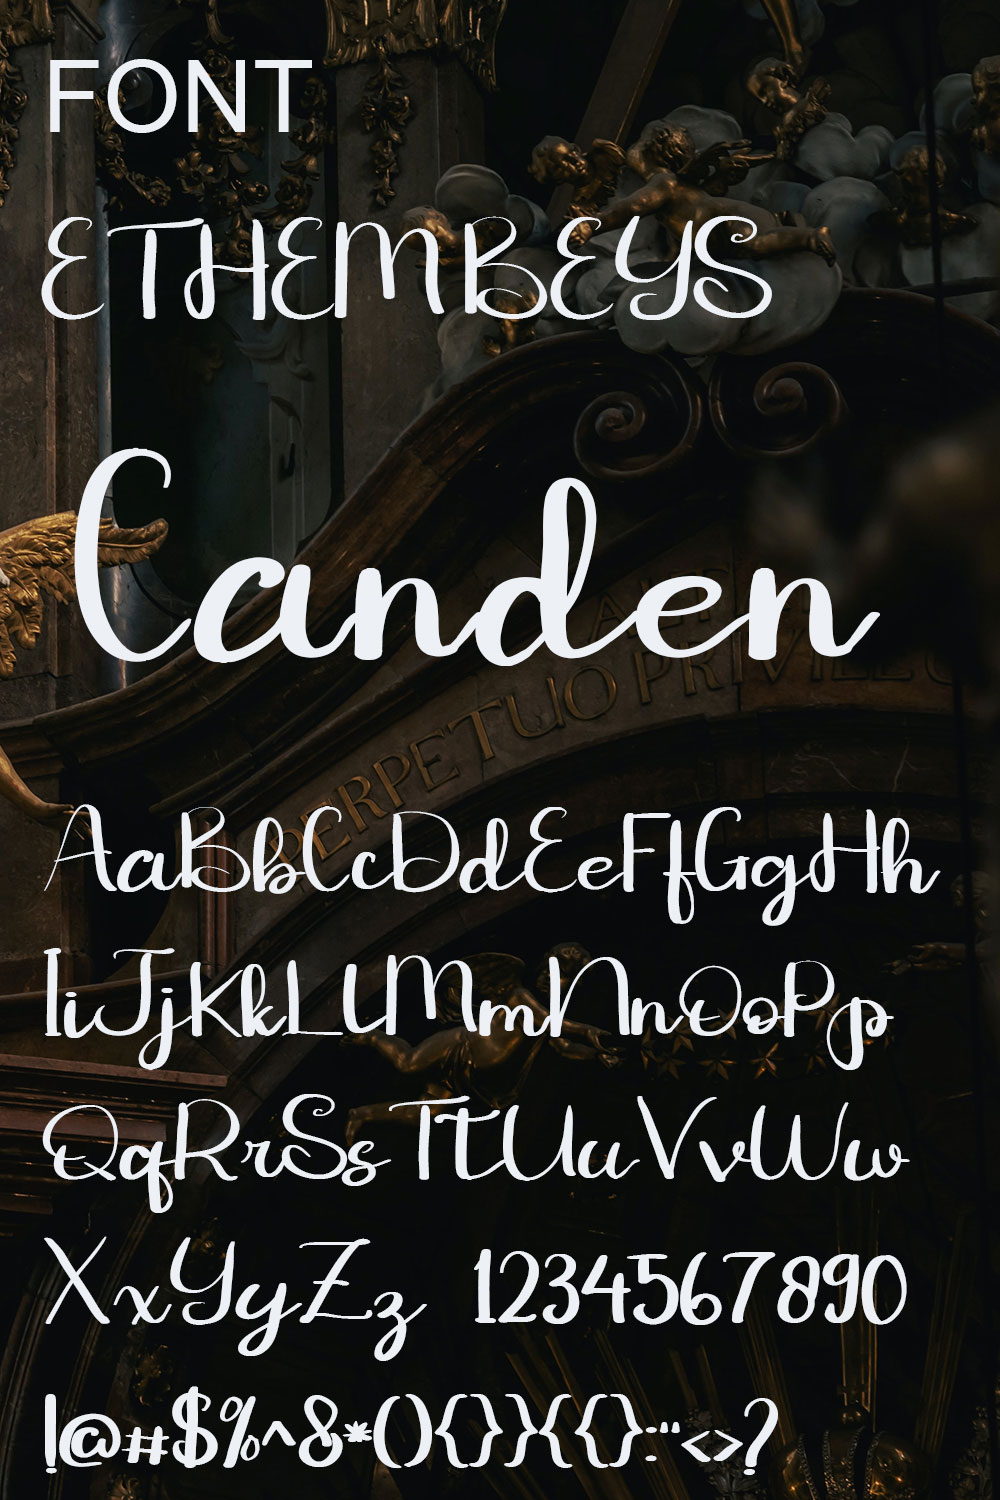 ETHEM BEYS Stylish Font - Only $18 pinterest image.